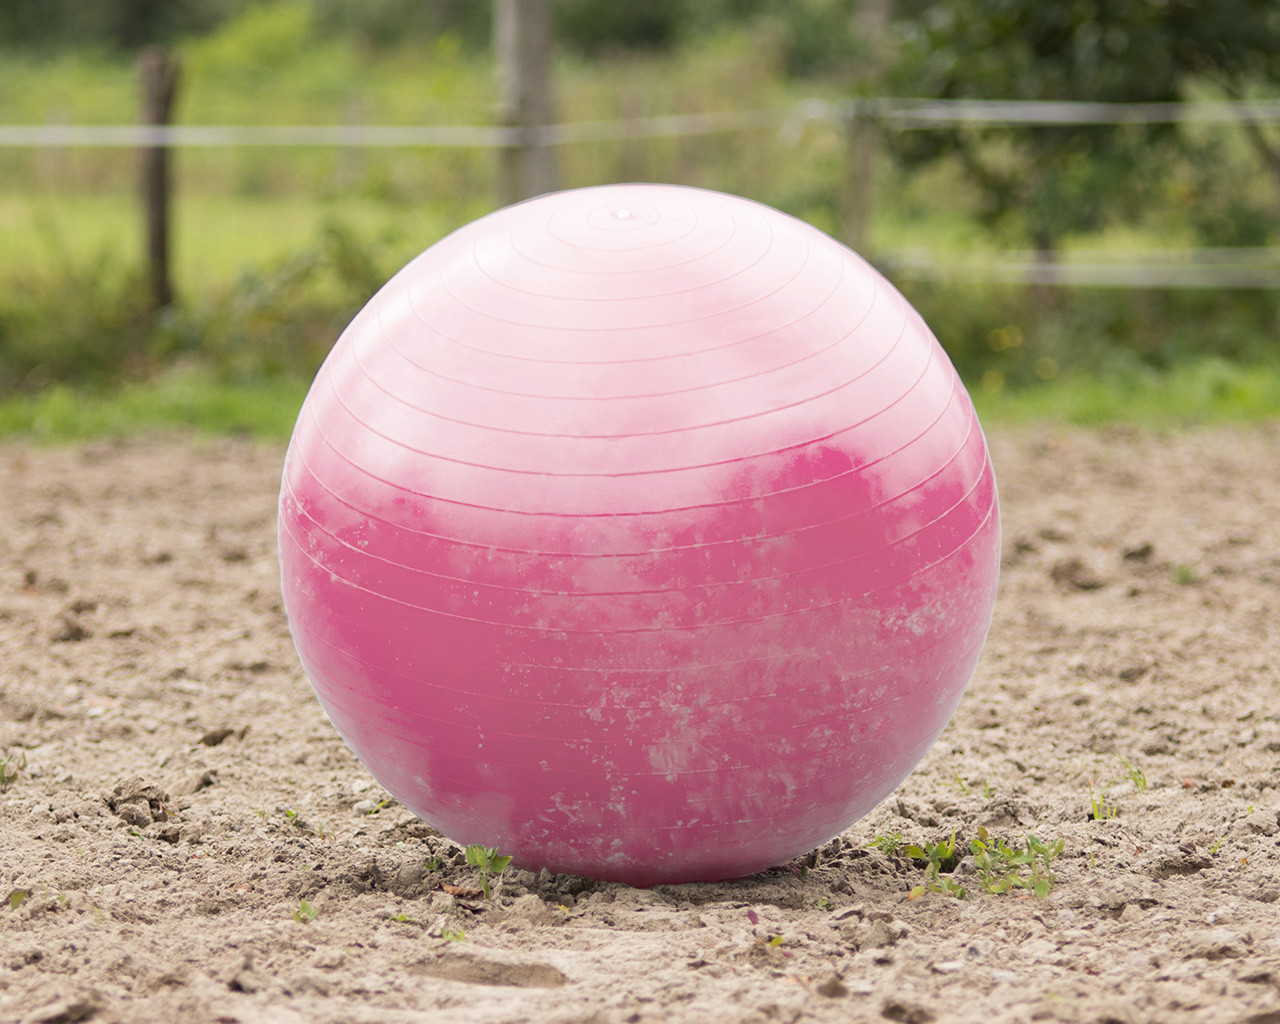 Koňský balón QHP Barvy: pink (růžová)